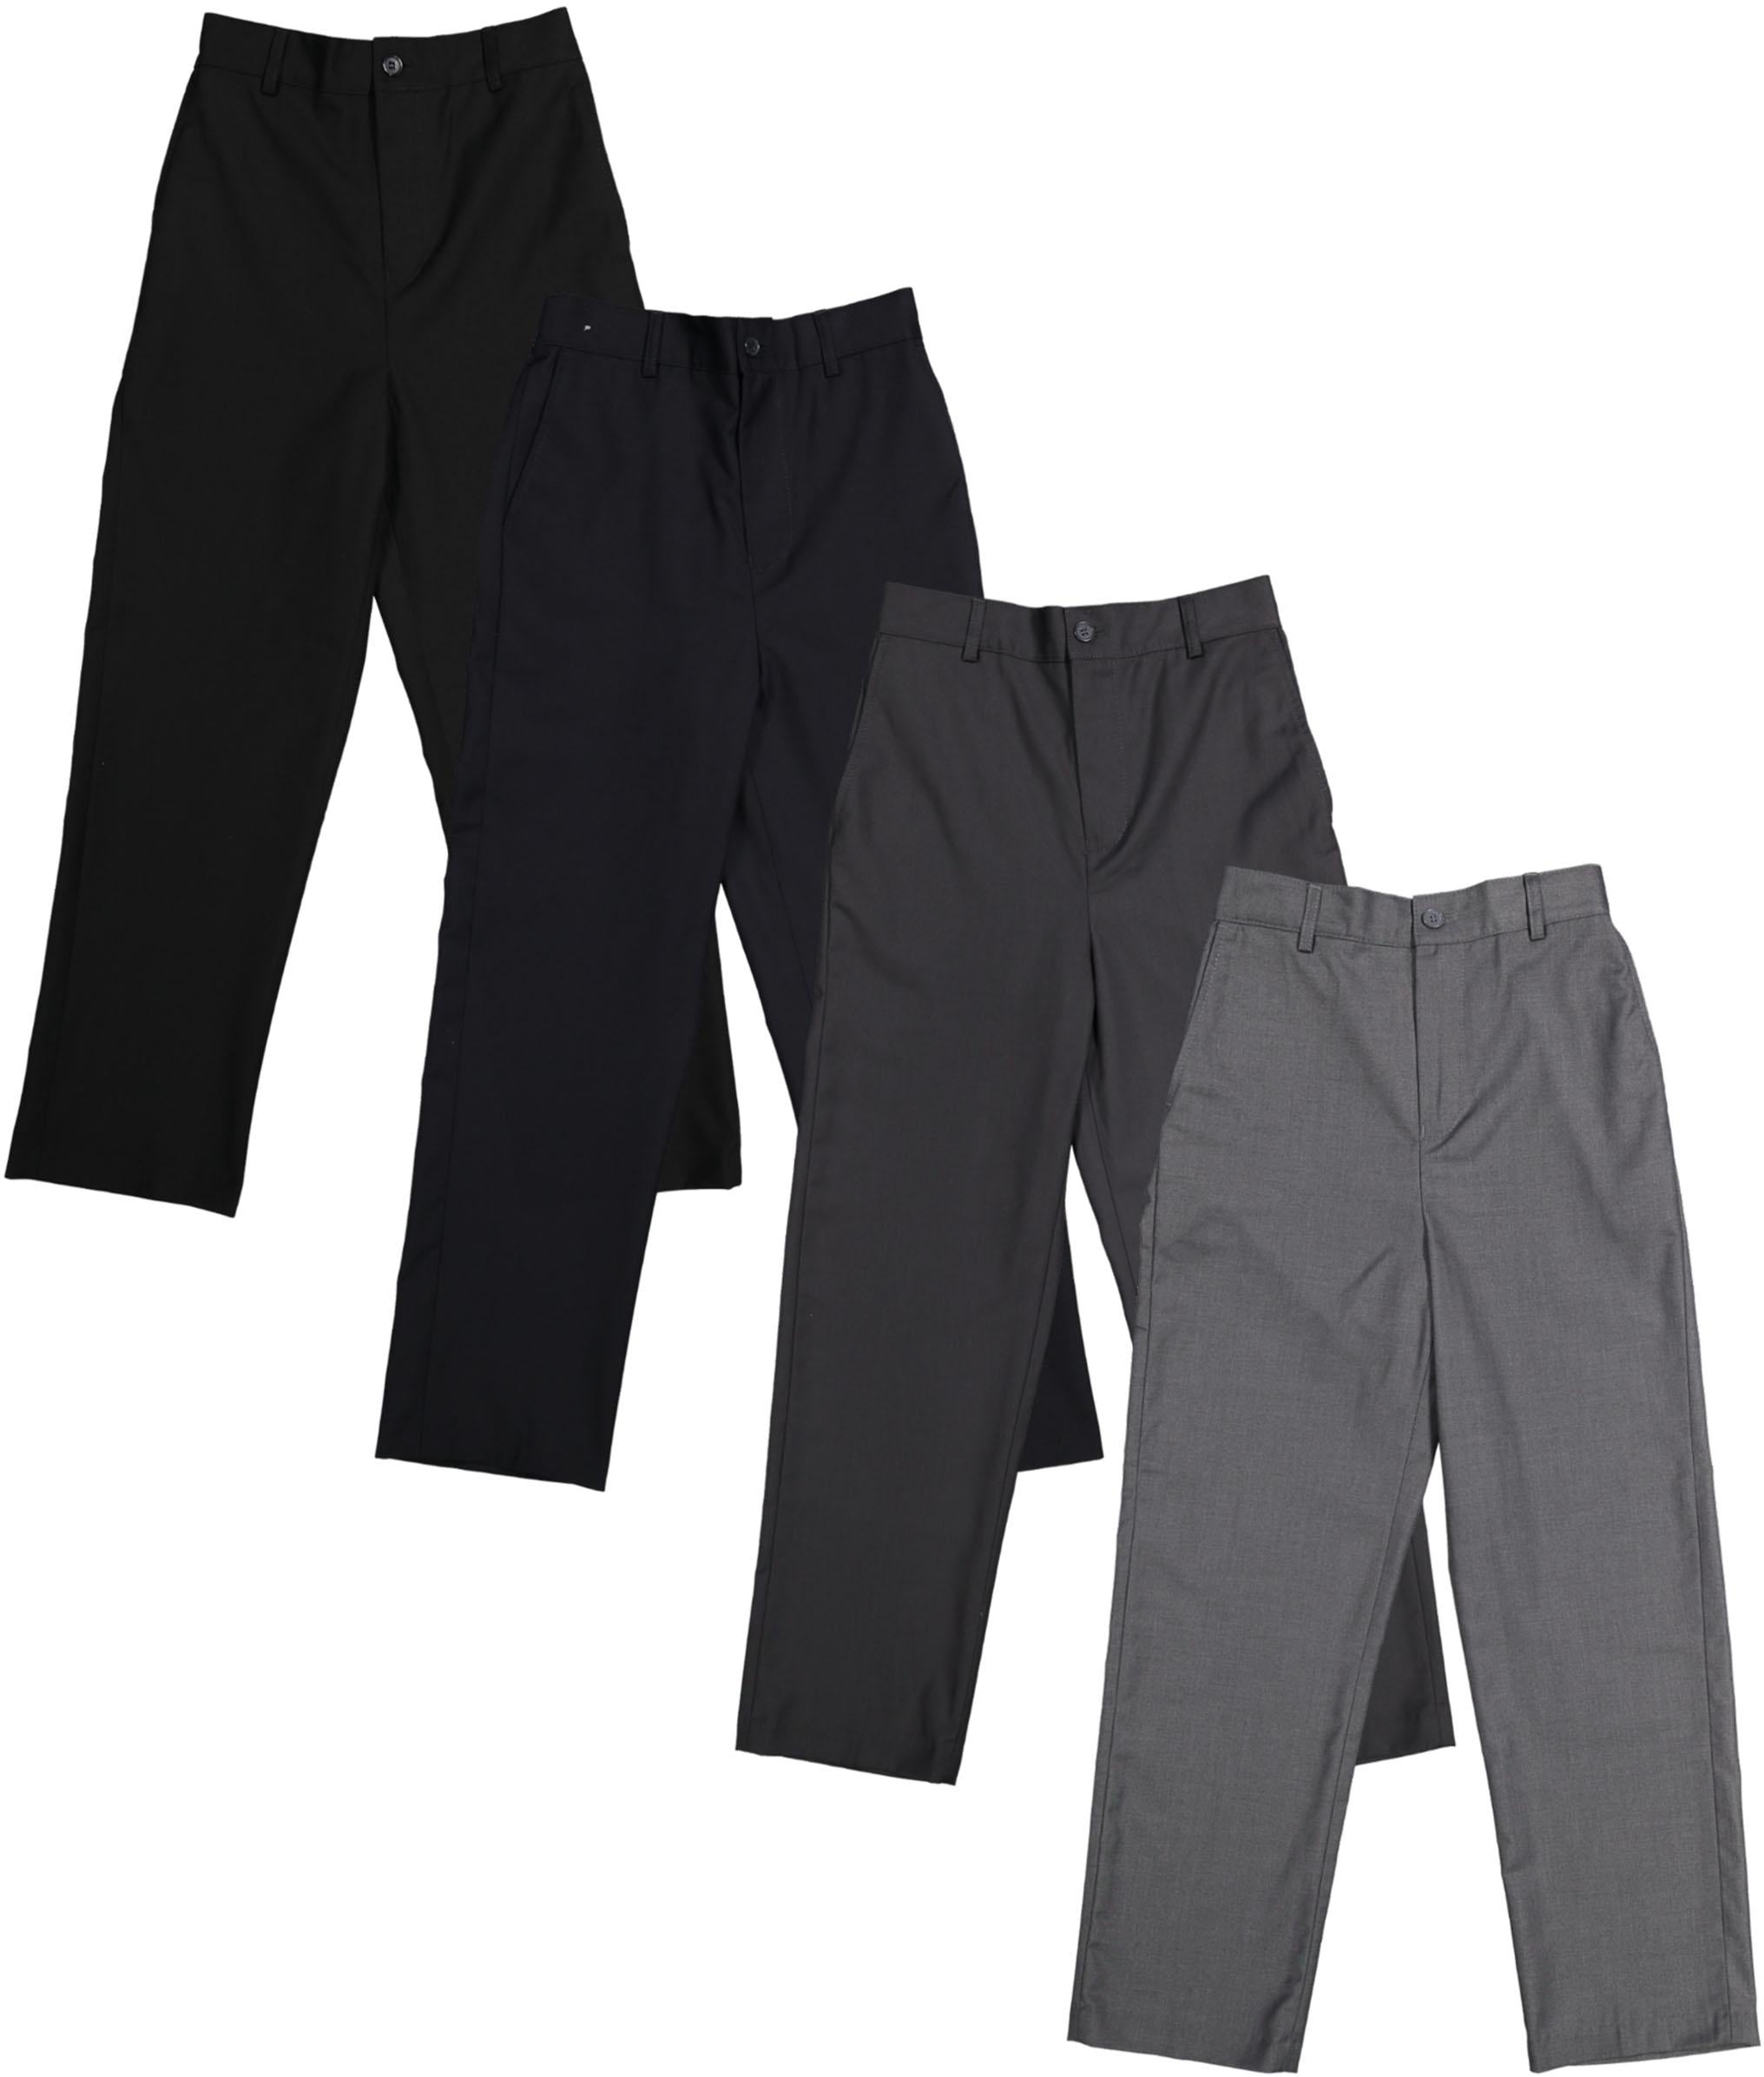 Boys A Khaki Uniform Flat Front Pants Husky Sizes 25 - 40